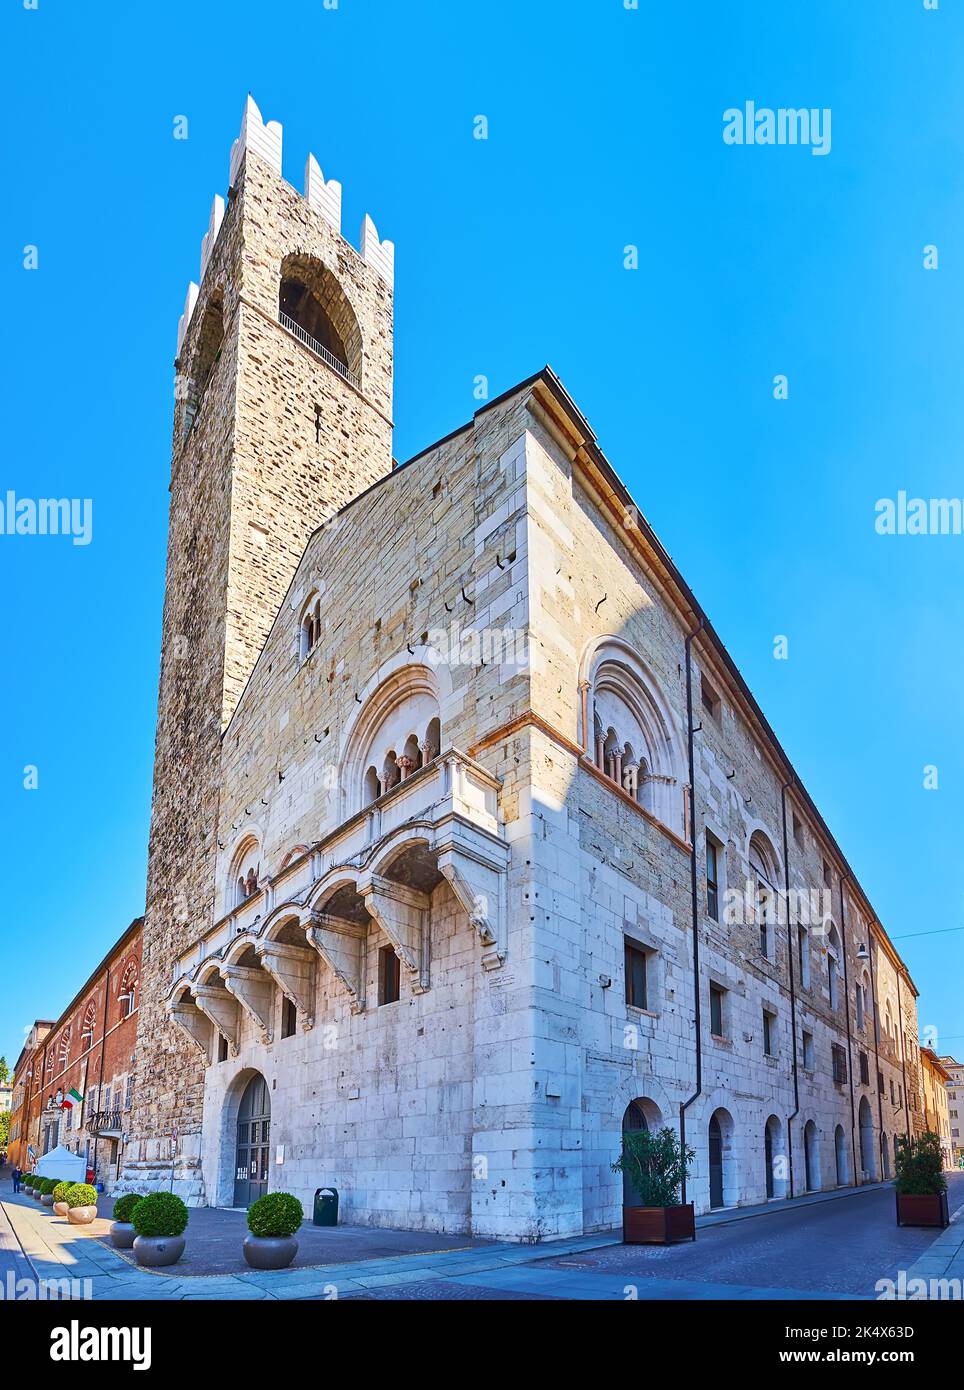 Extérieur du palais médiéval Palazzo Broletto avec tour Torre del pegol, Piazza del Duomo, Brescia, Italie Banque D'Images